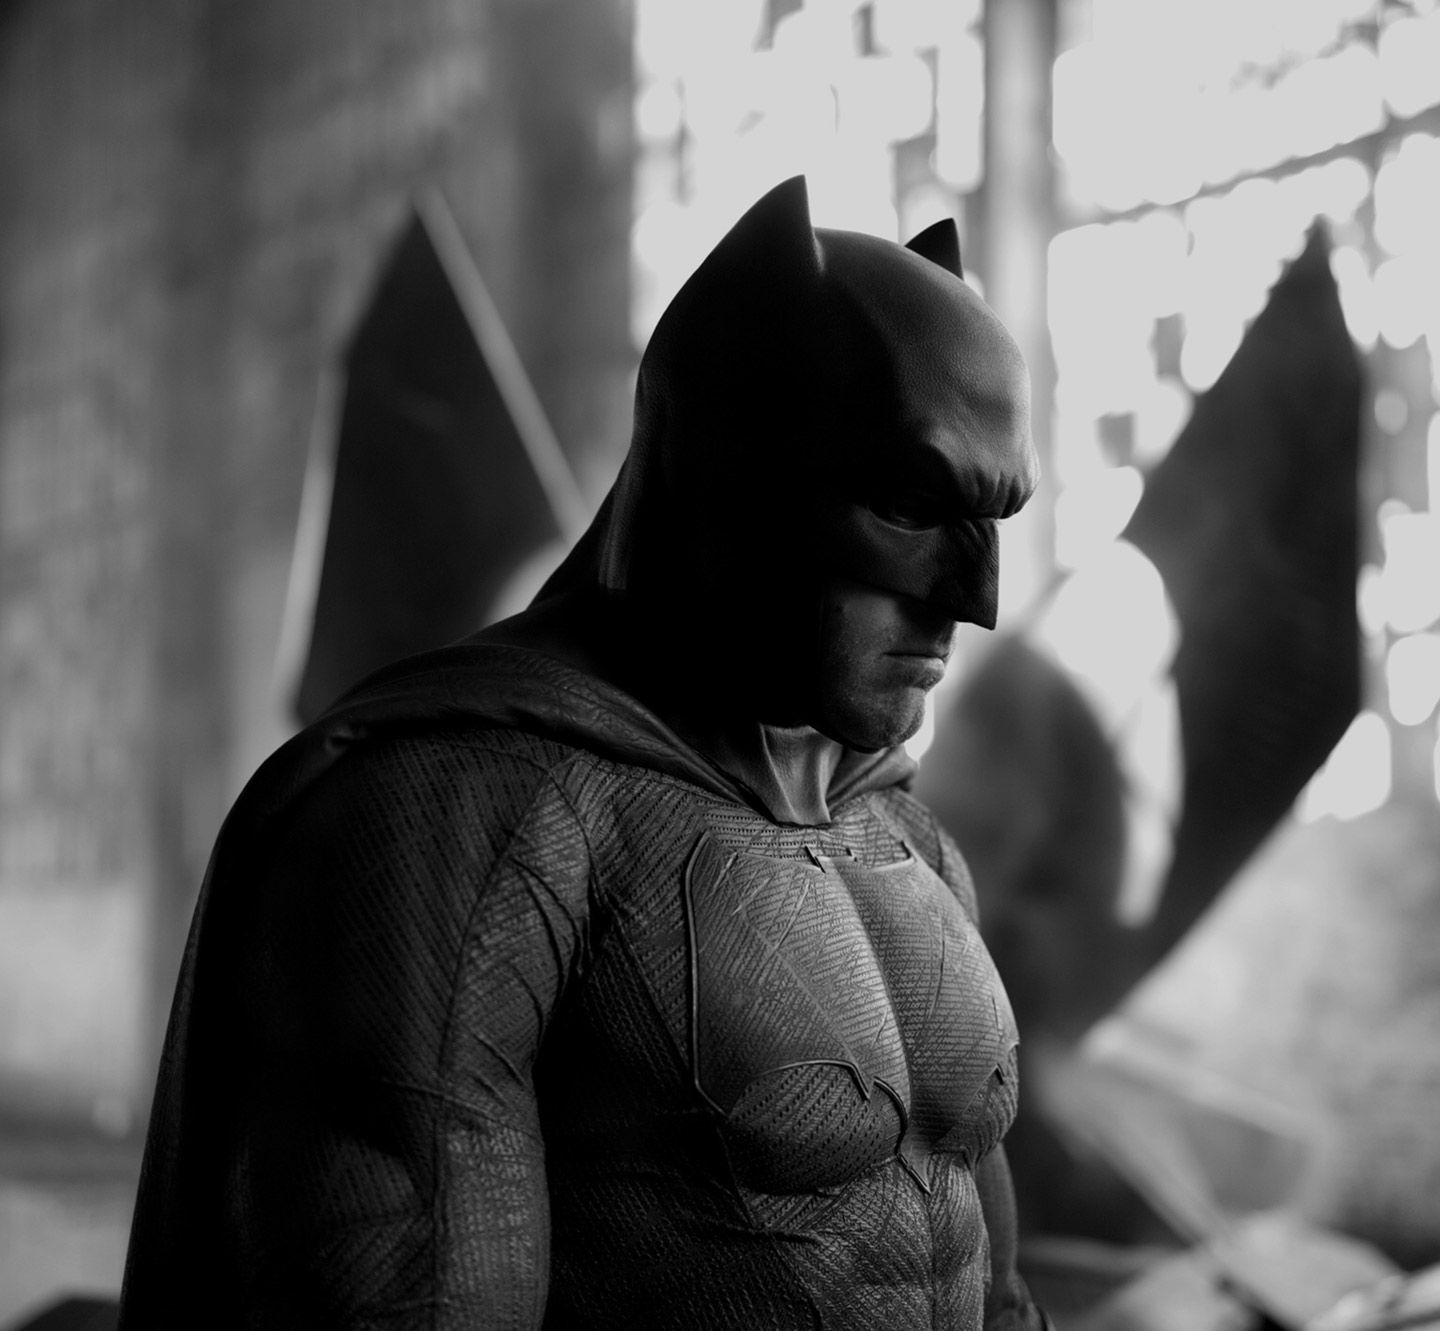 Зак Снайдер рассказал, что хочет снять фильм о Бэтмене для перезапущенной киновселенной DC